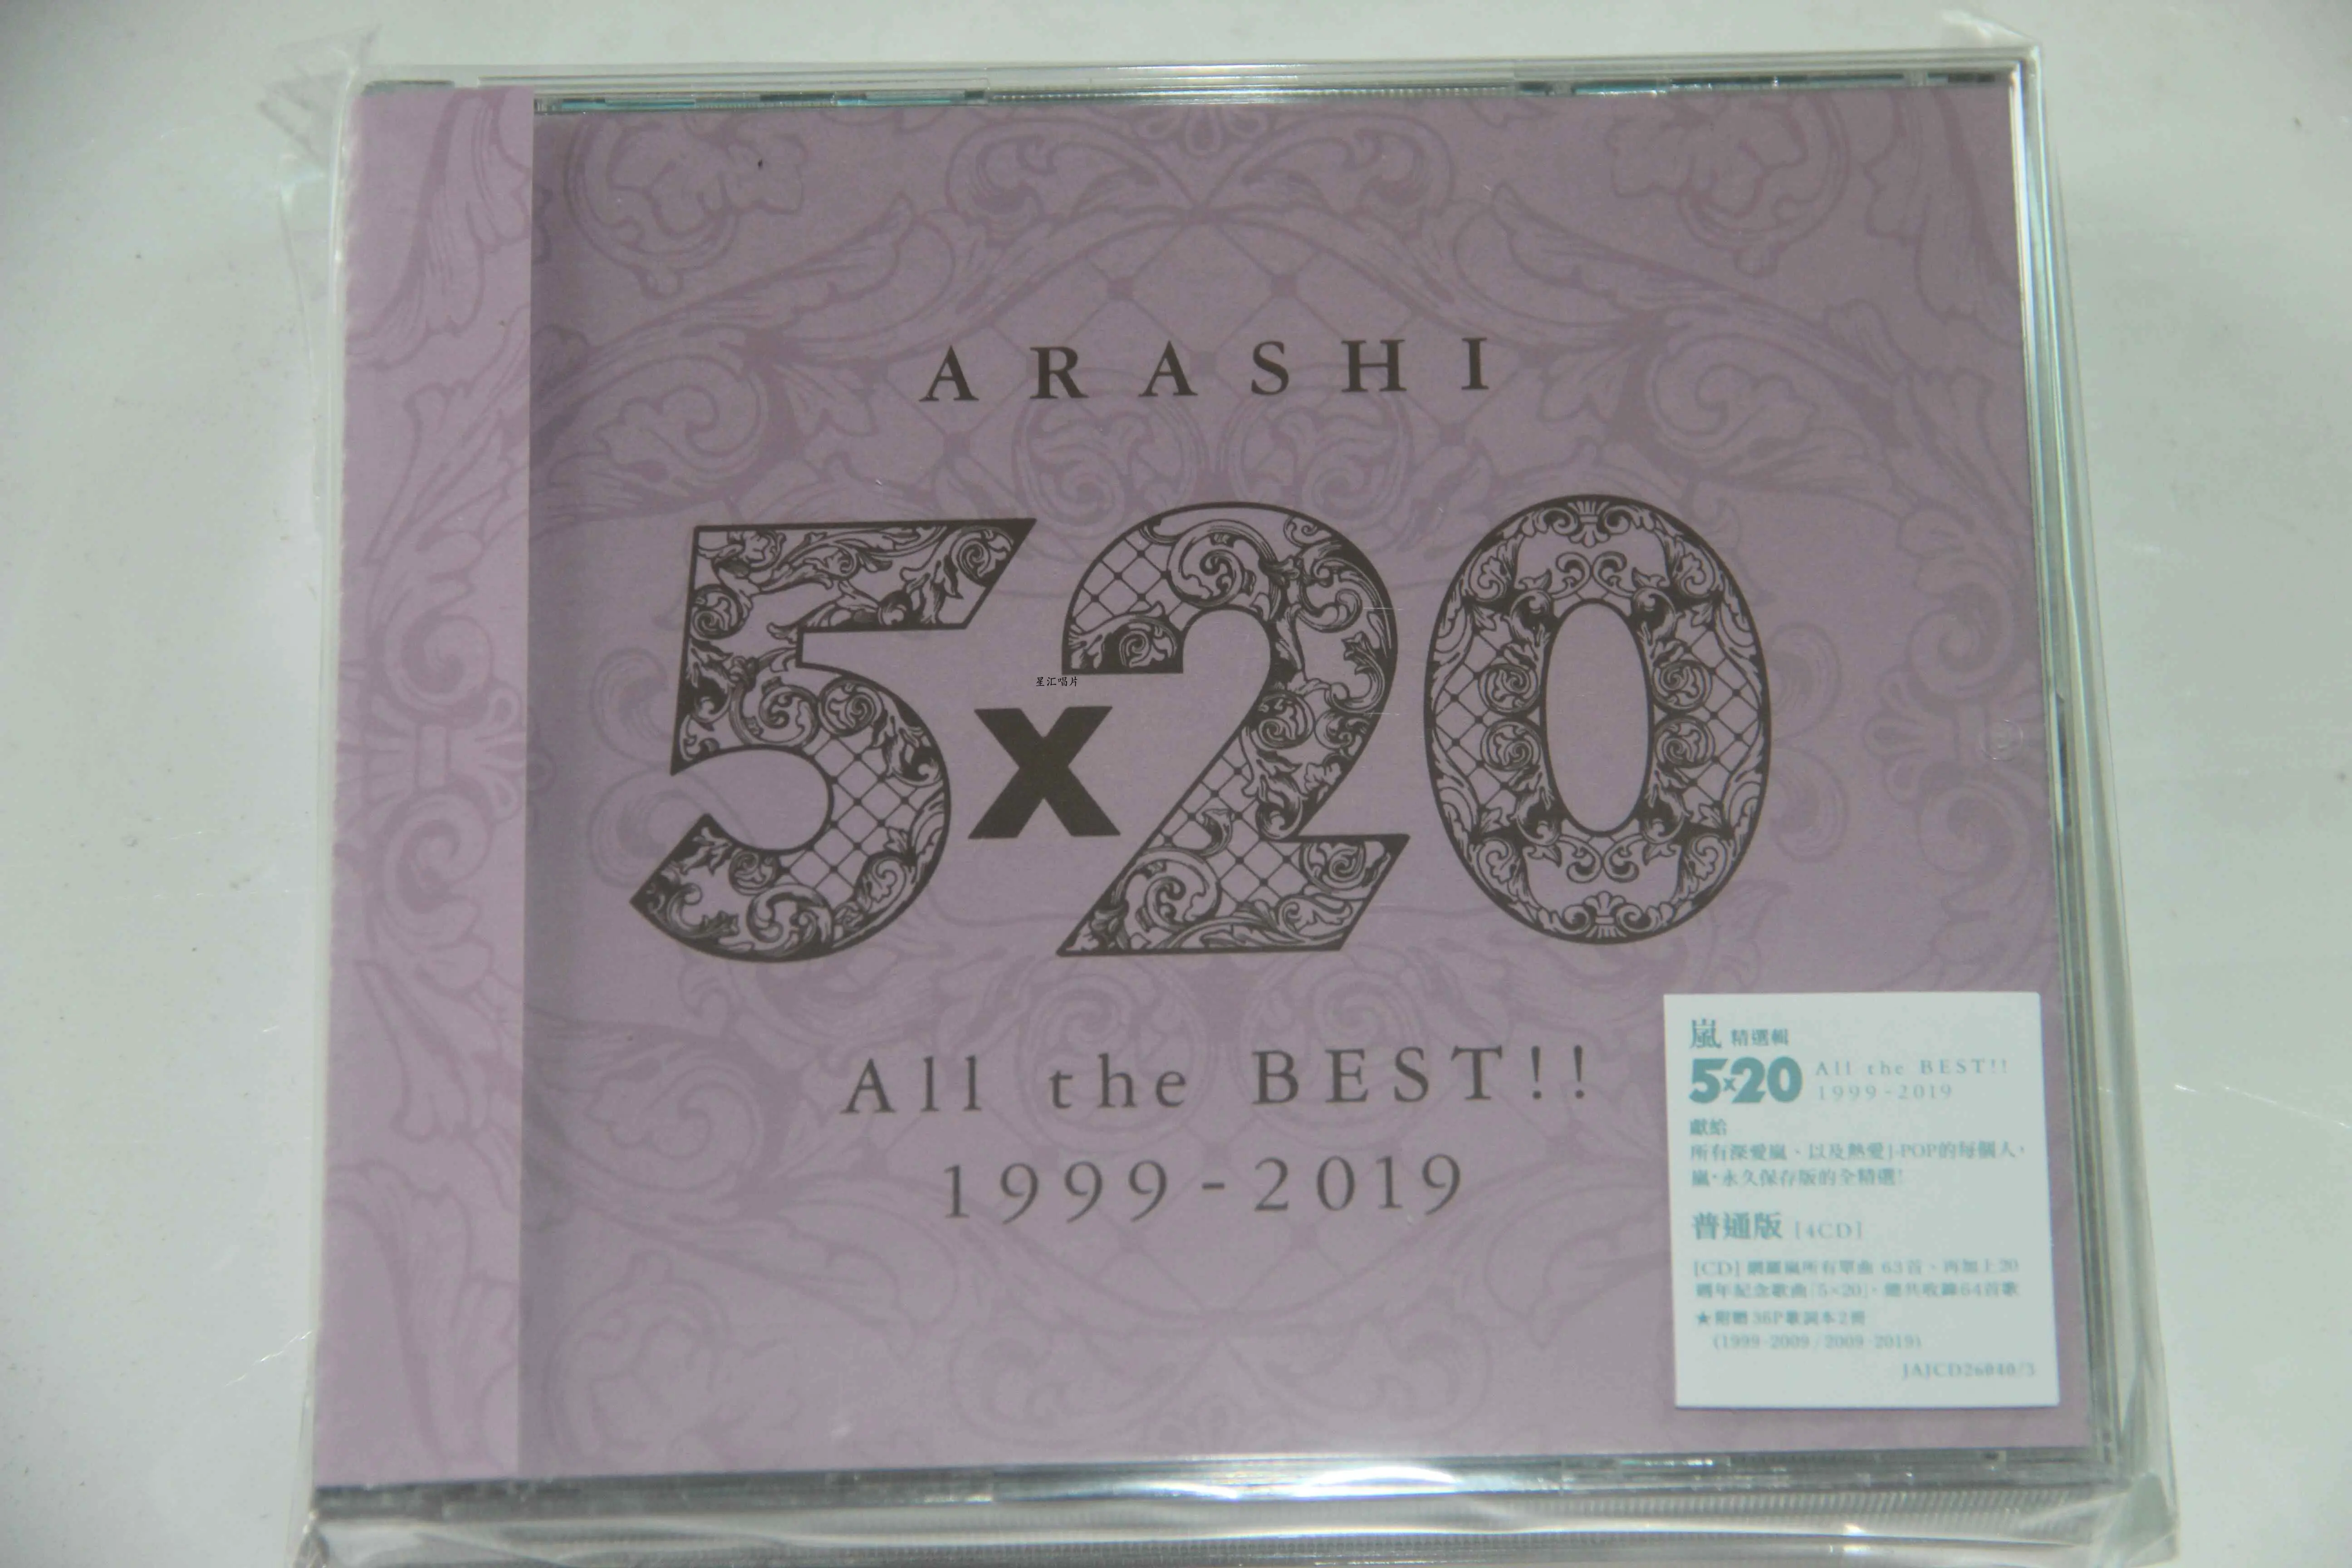 现货】岚ARASHI 5x20 All the BEST1999-2019 通常盘4CD